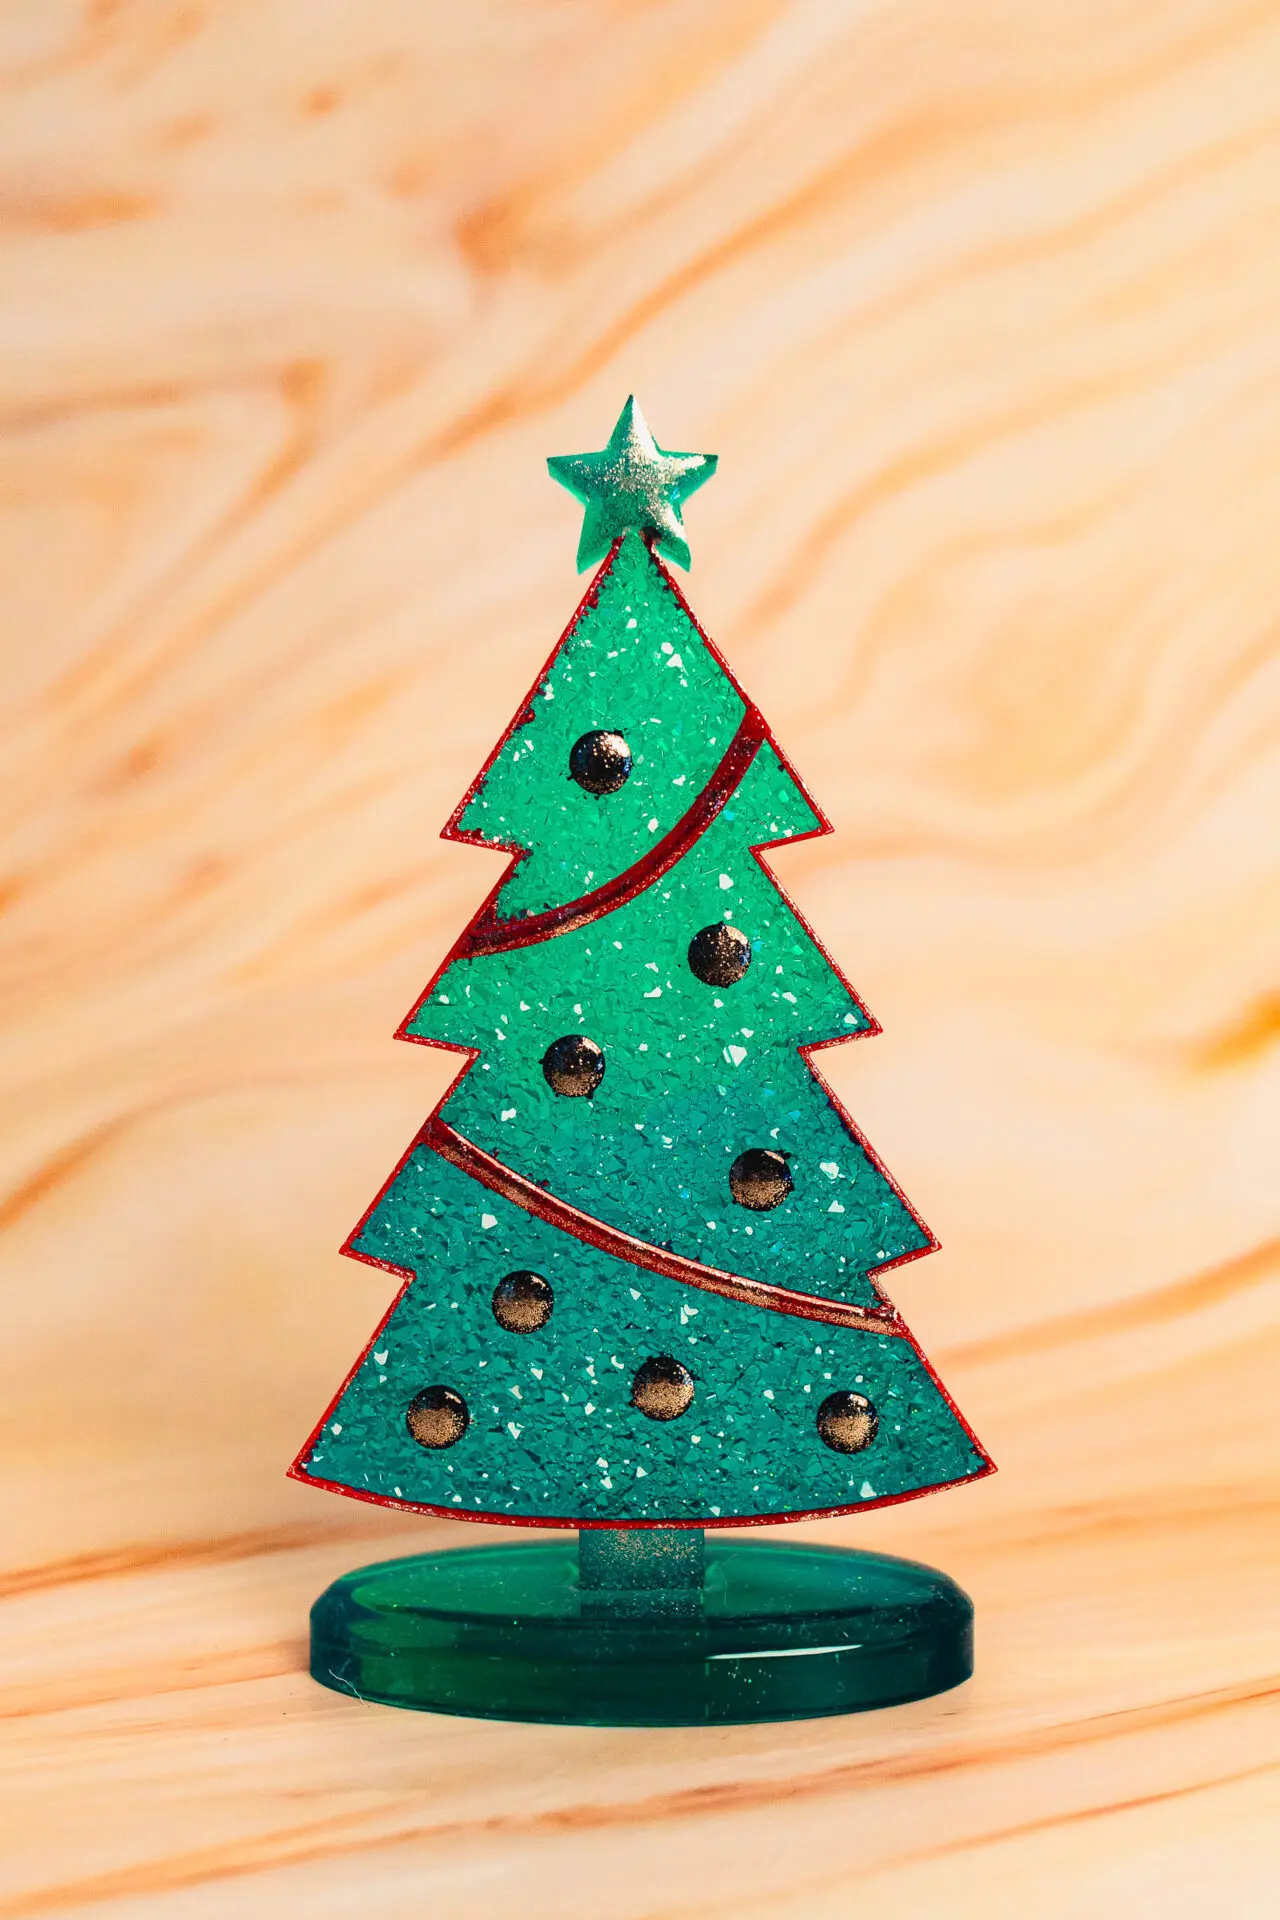 Décoration de Noël - Sapin de Noël à poser sur la table - couleur vert, rouge et doré - Boutique en ligne d'idées cadeaux et de décoration pour la fête des mères, la fêtes des pères ou pour un anniversaire enfant ou adulte, pour les fêtes de Noël ou pour tout autre occasion